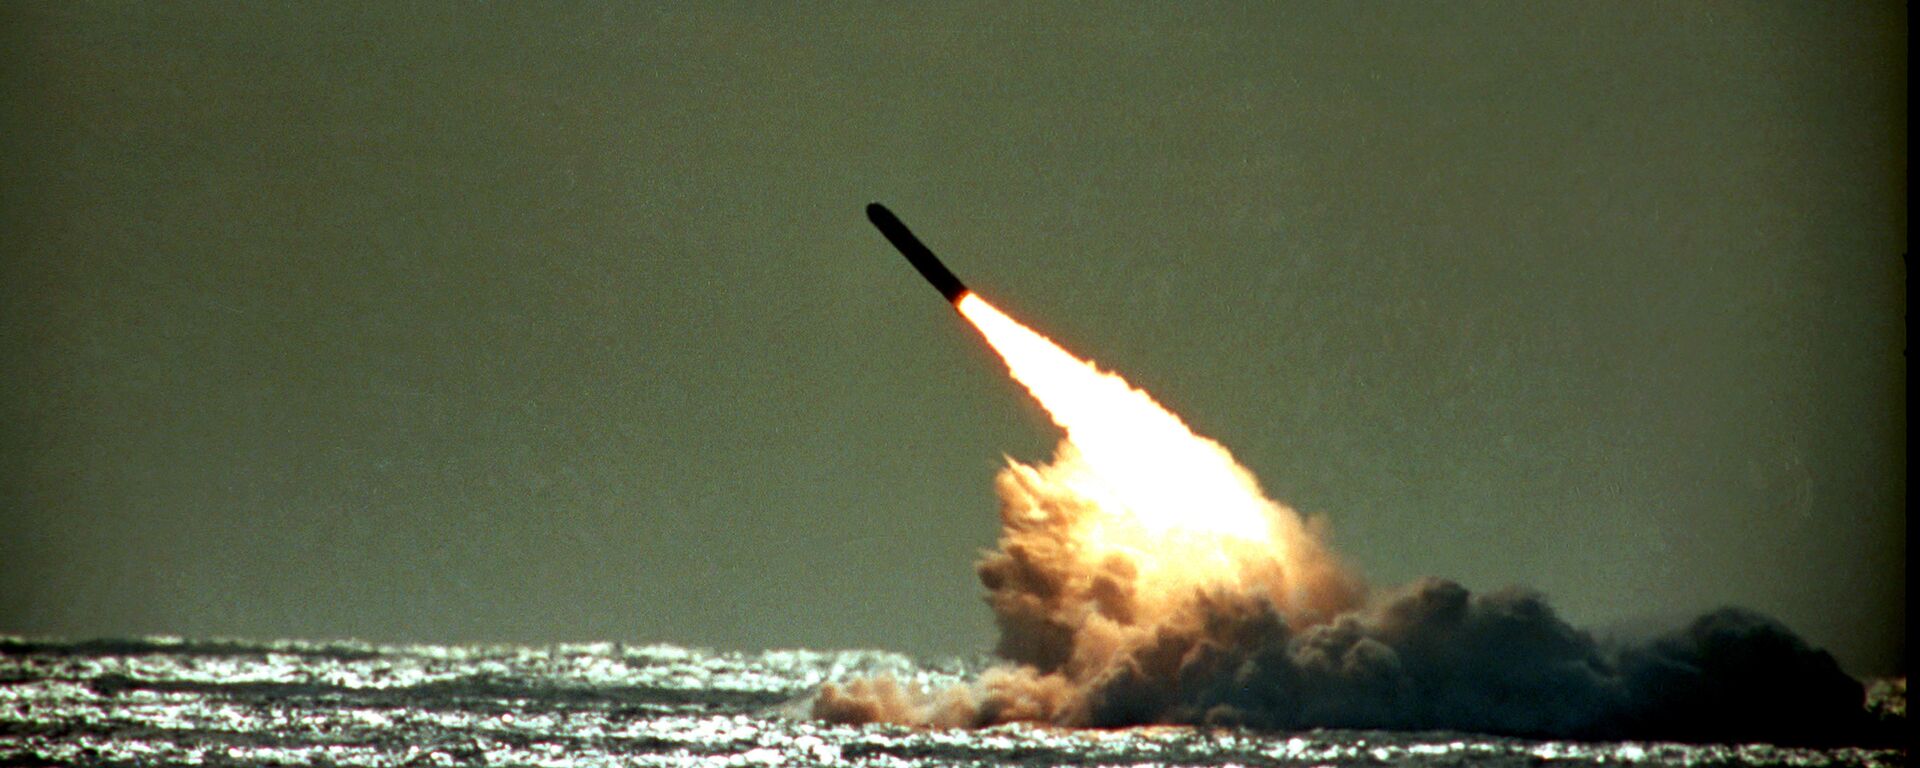 Lanzamiento de misil balístico de EEUU (1989) - Sputnik Mundo, 1920, 06.10.2022